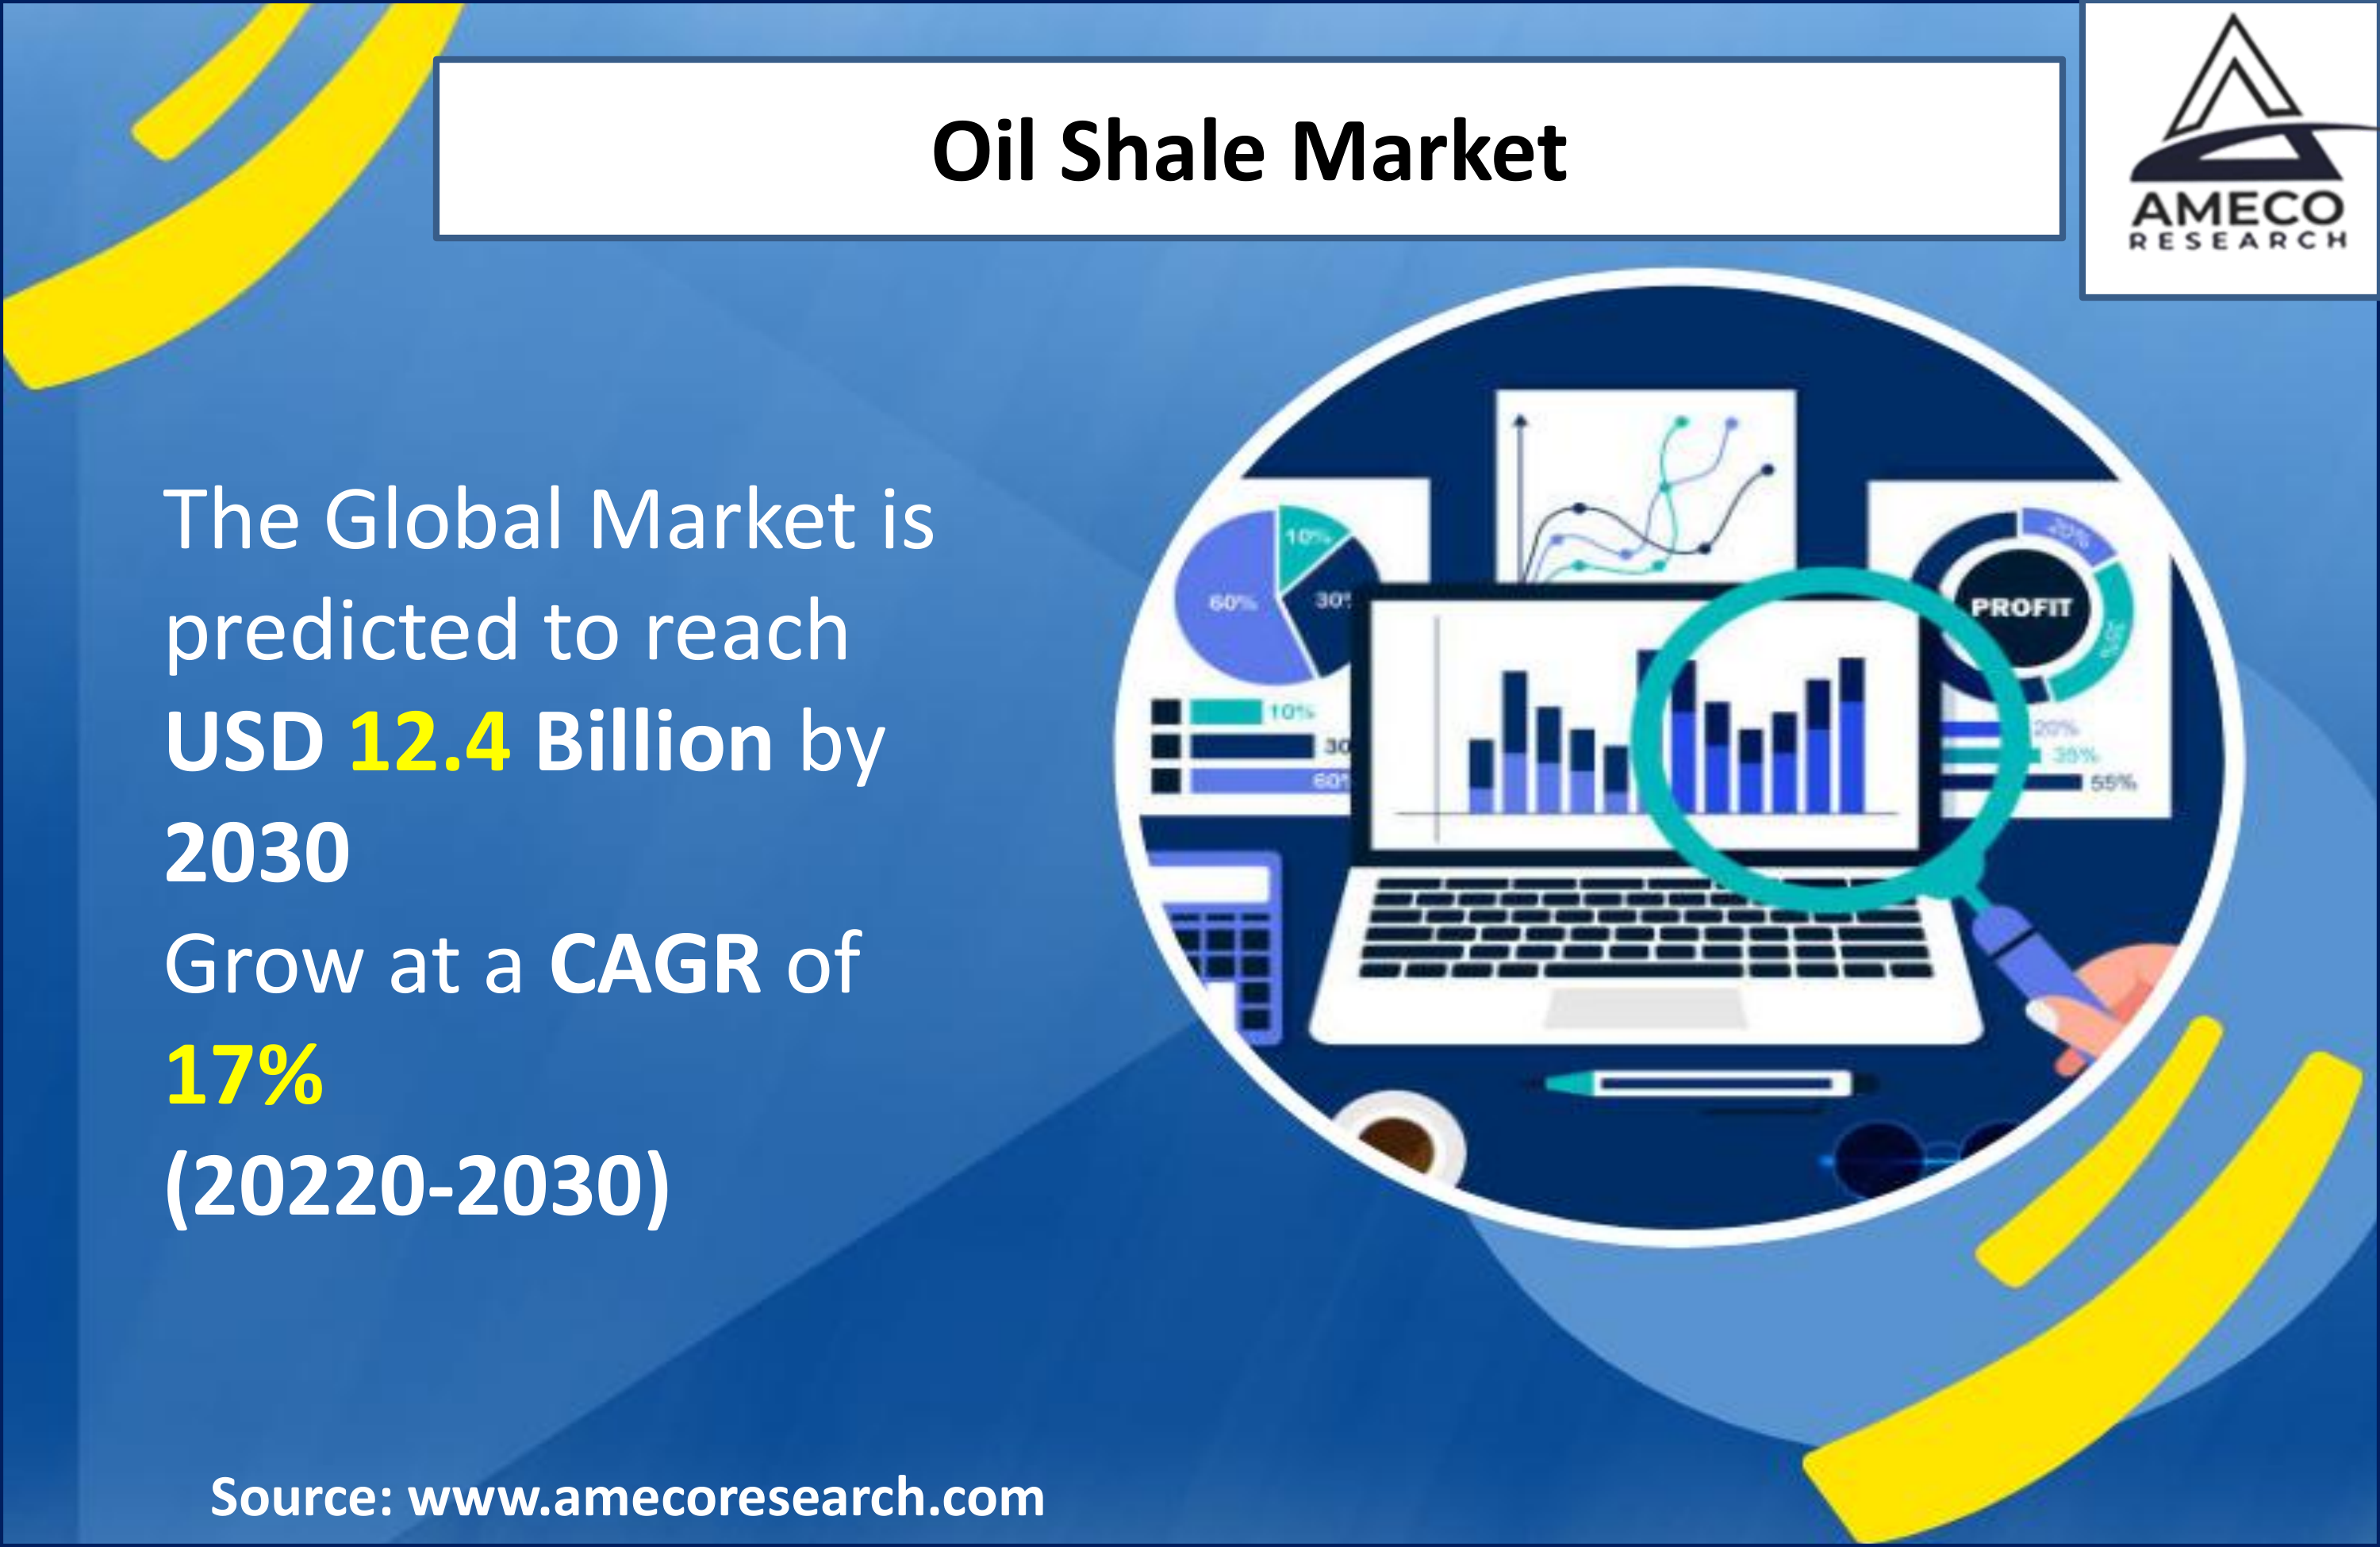 Oil Shale Market